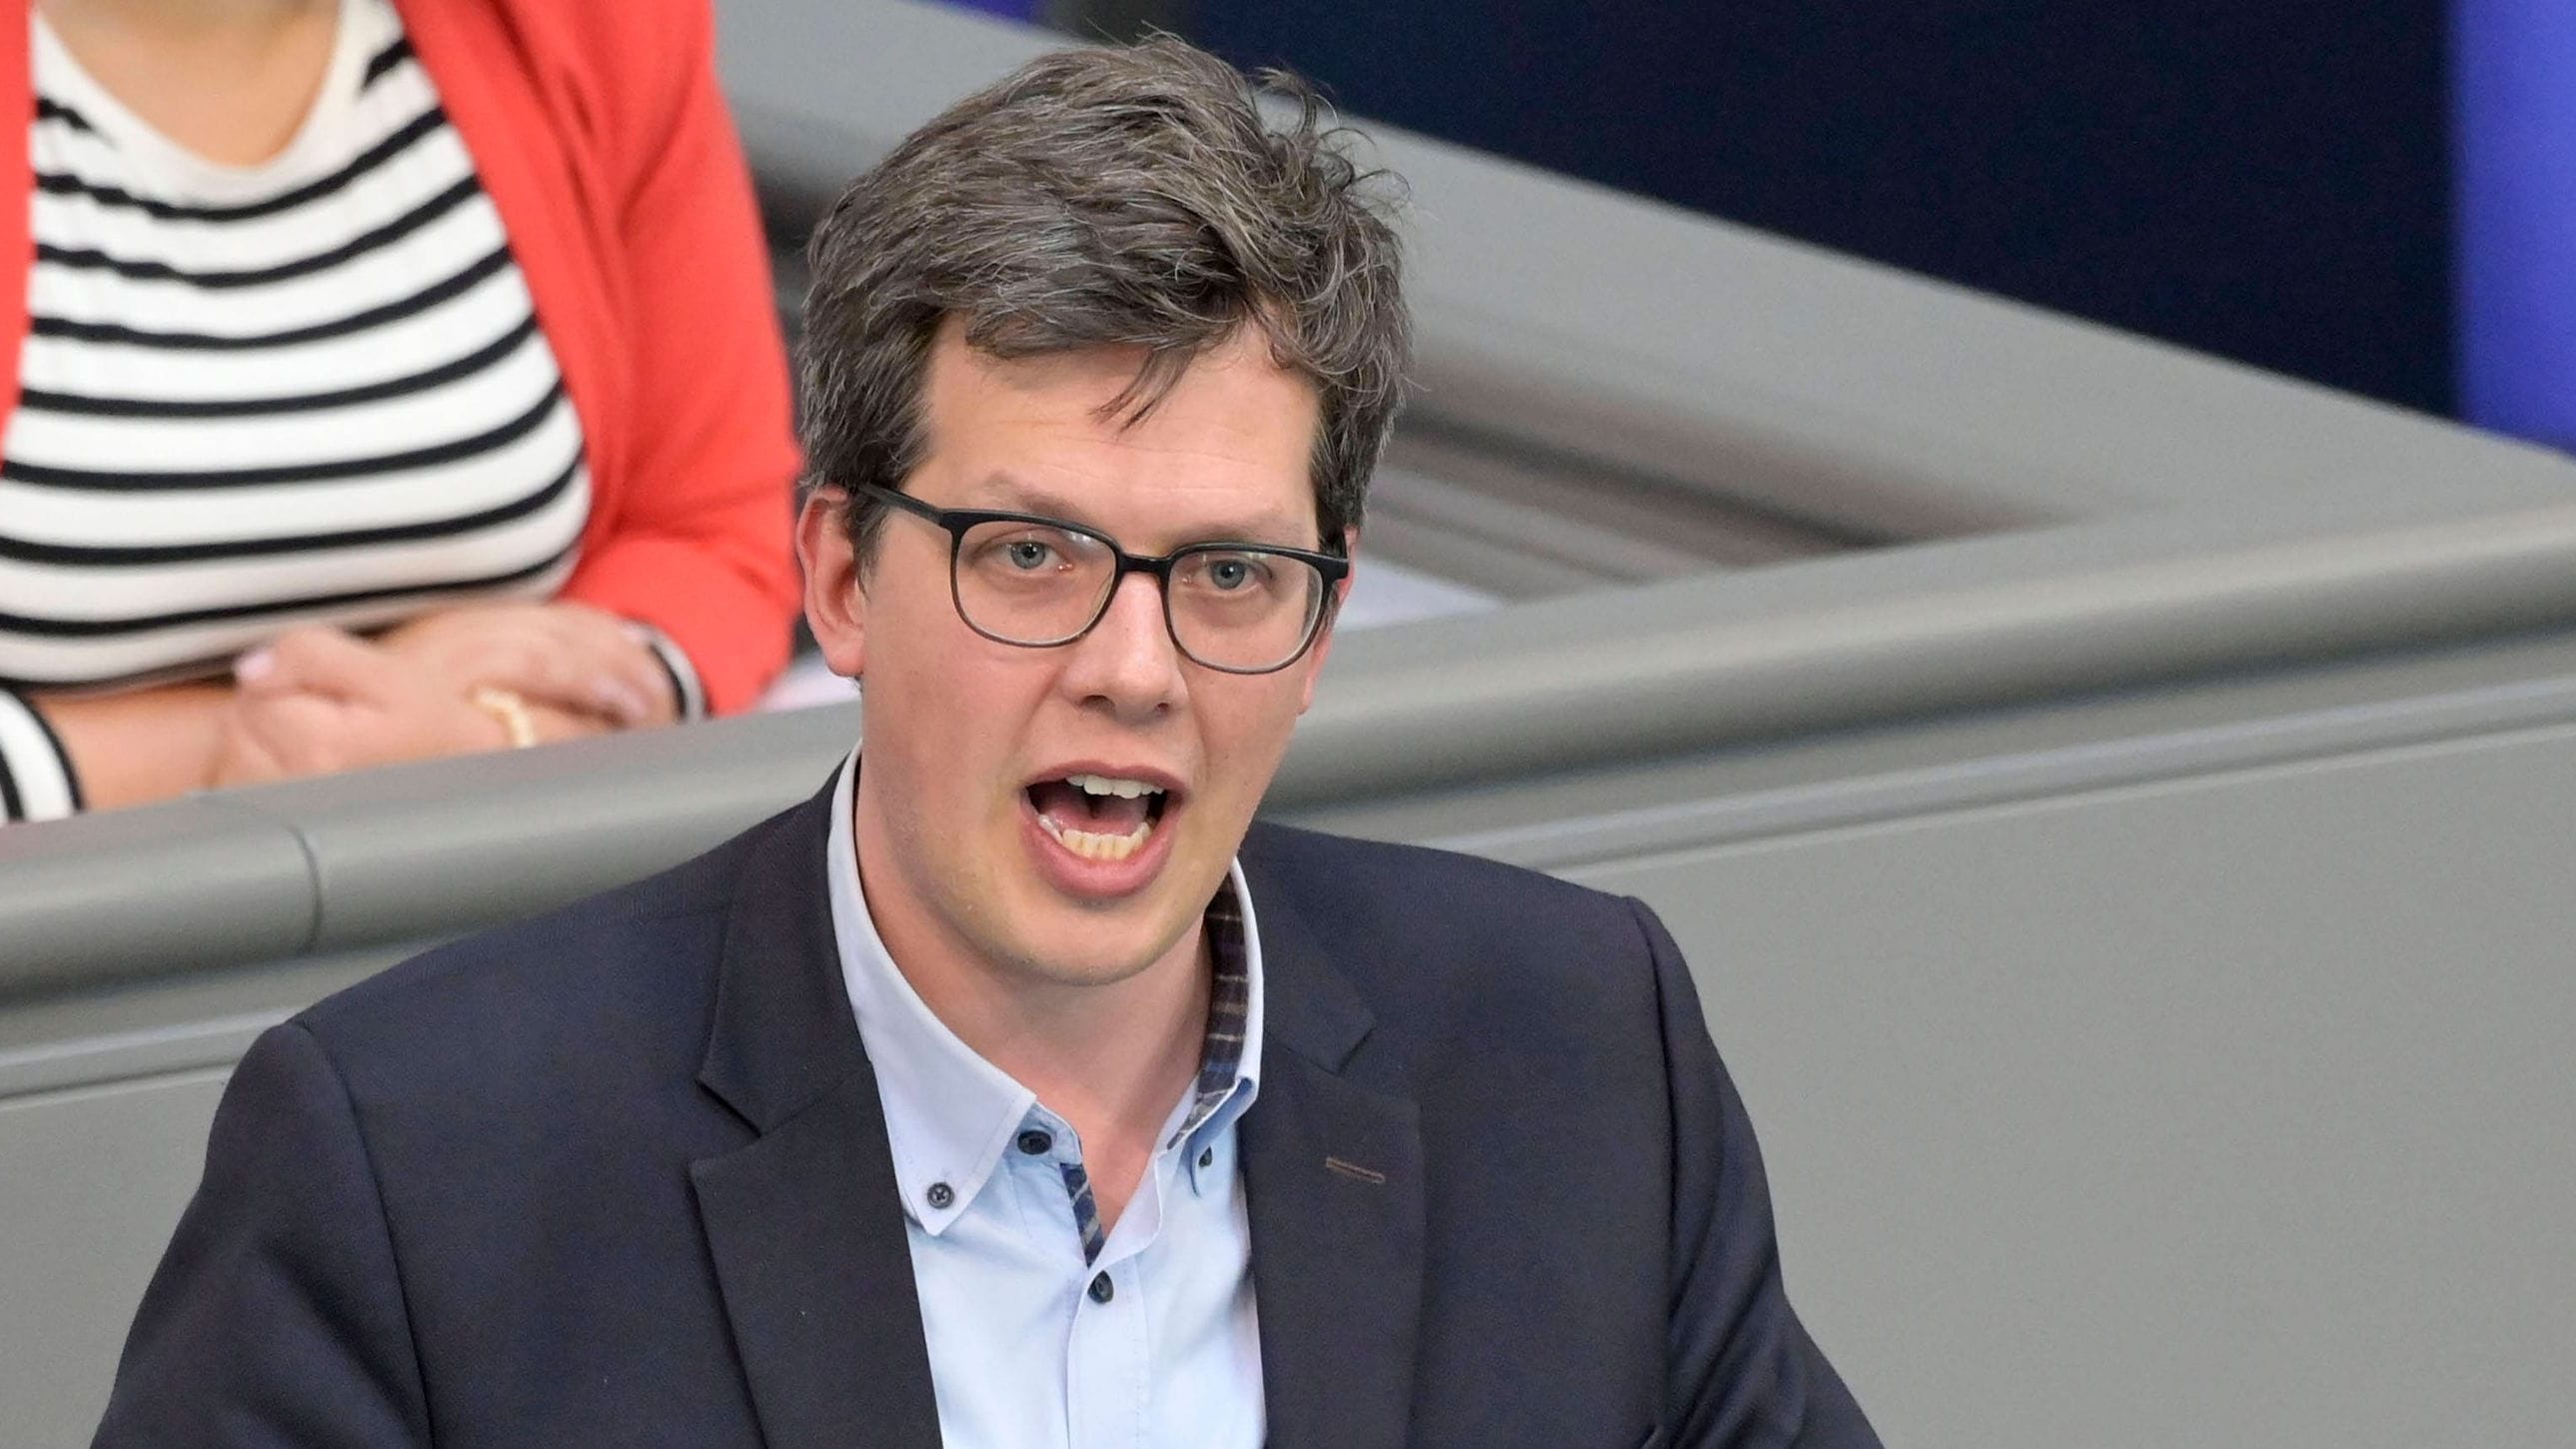 Arbeitszeit: FDP will Acht-Stunden-Tag abschaffen